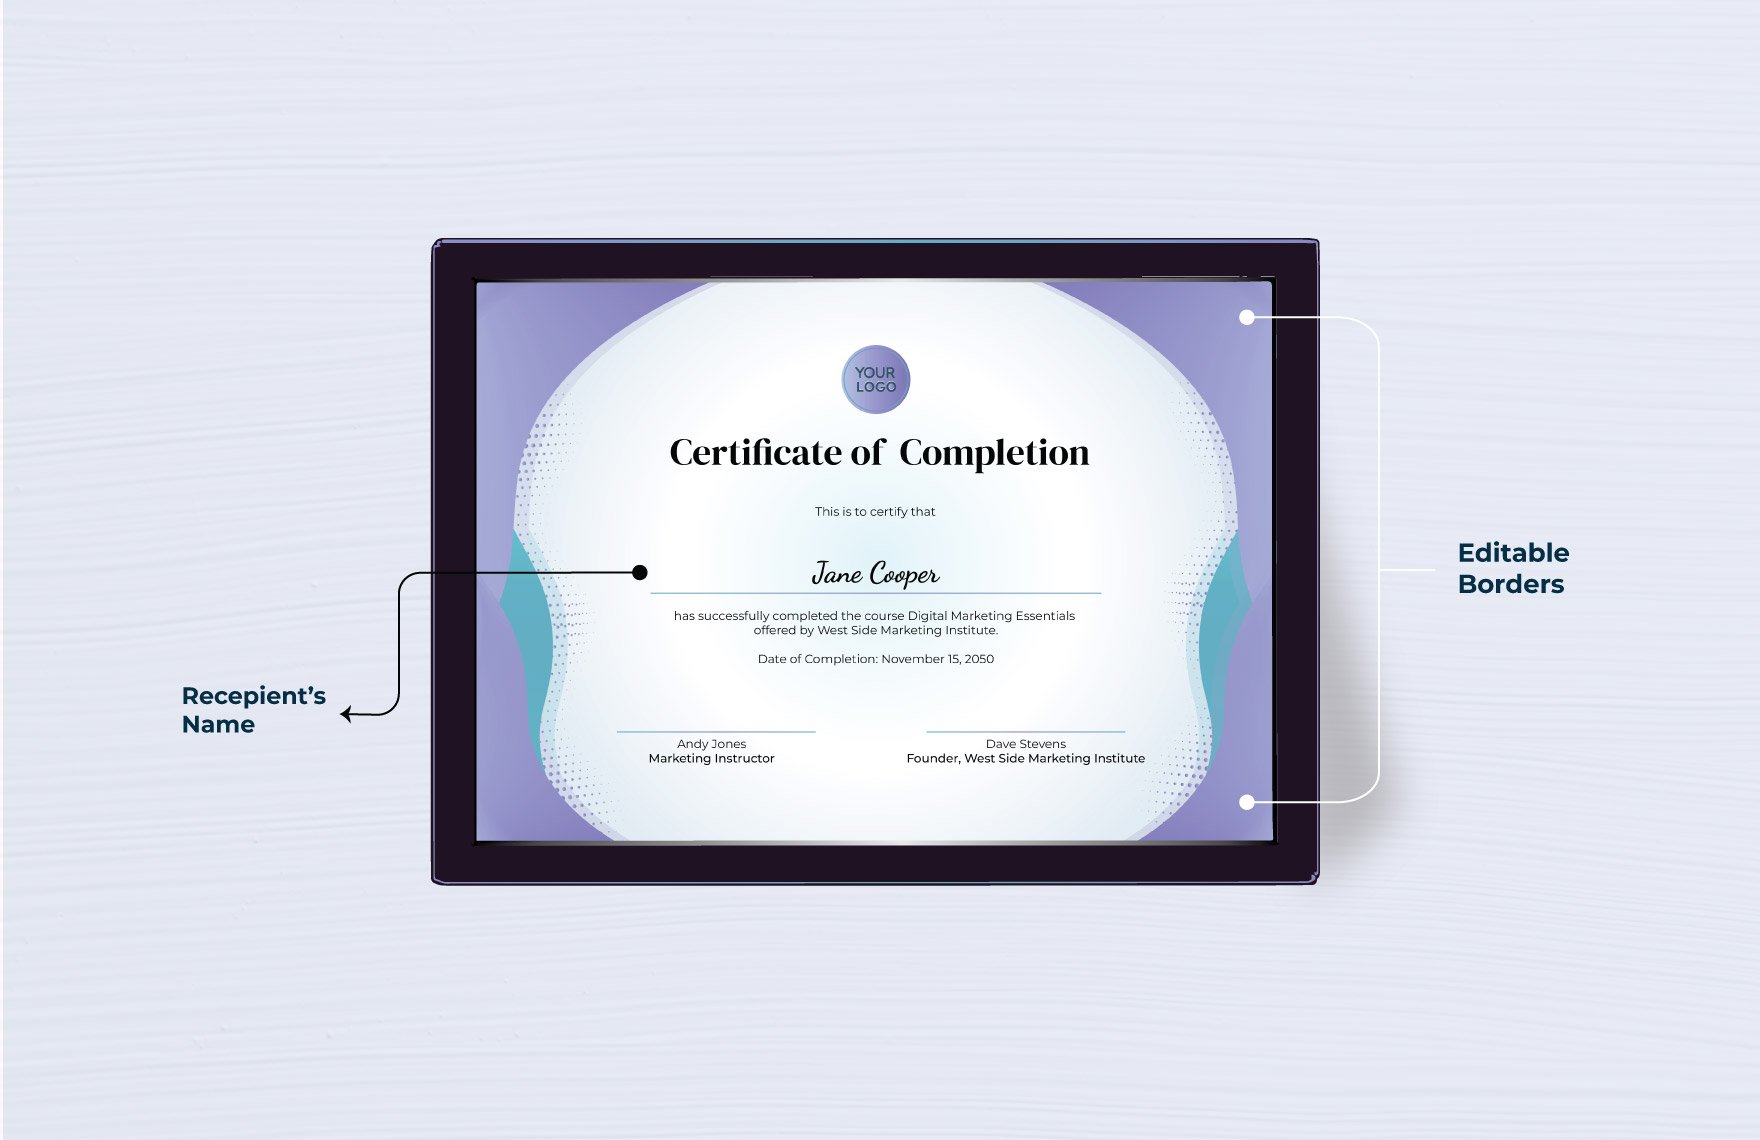 Course Certificate Template